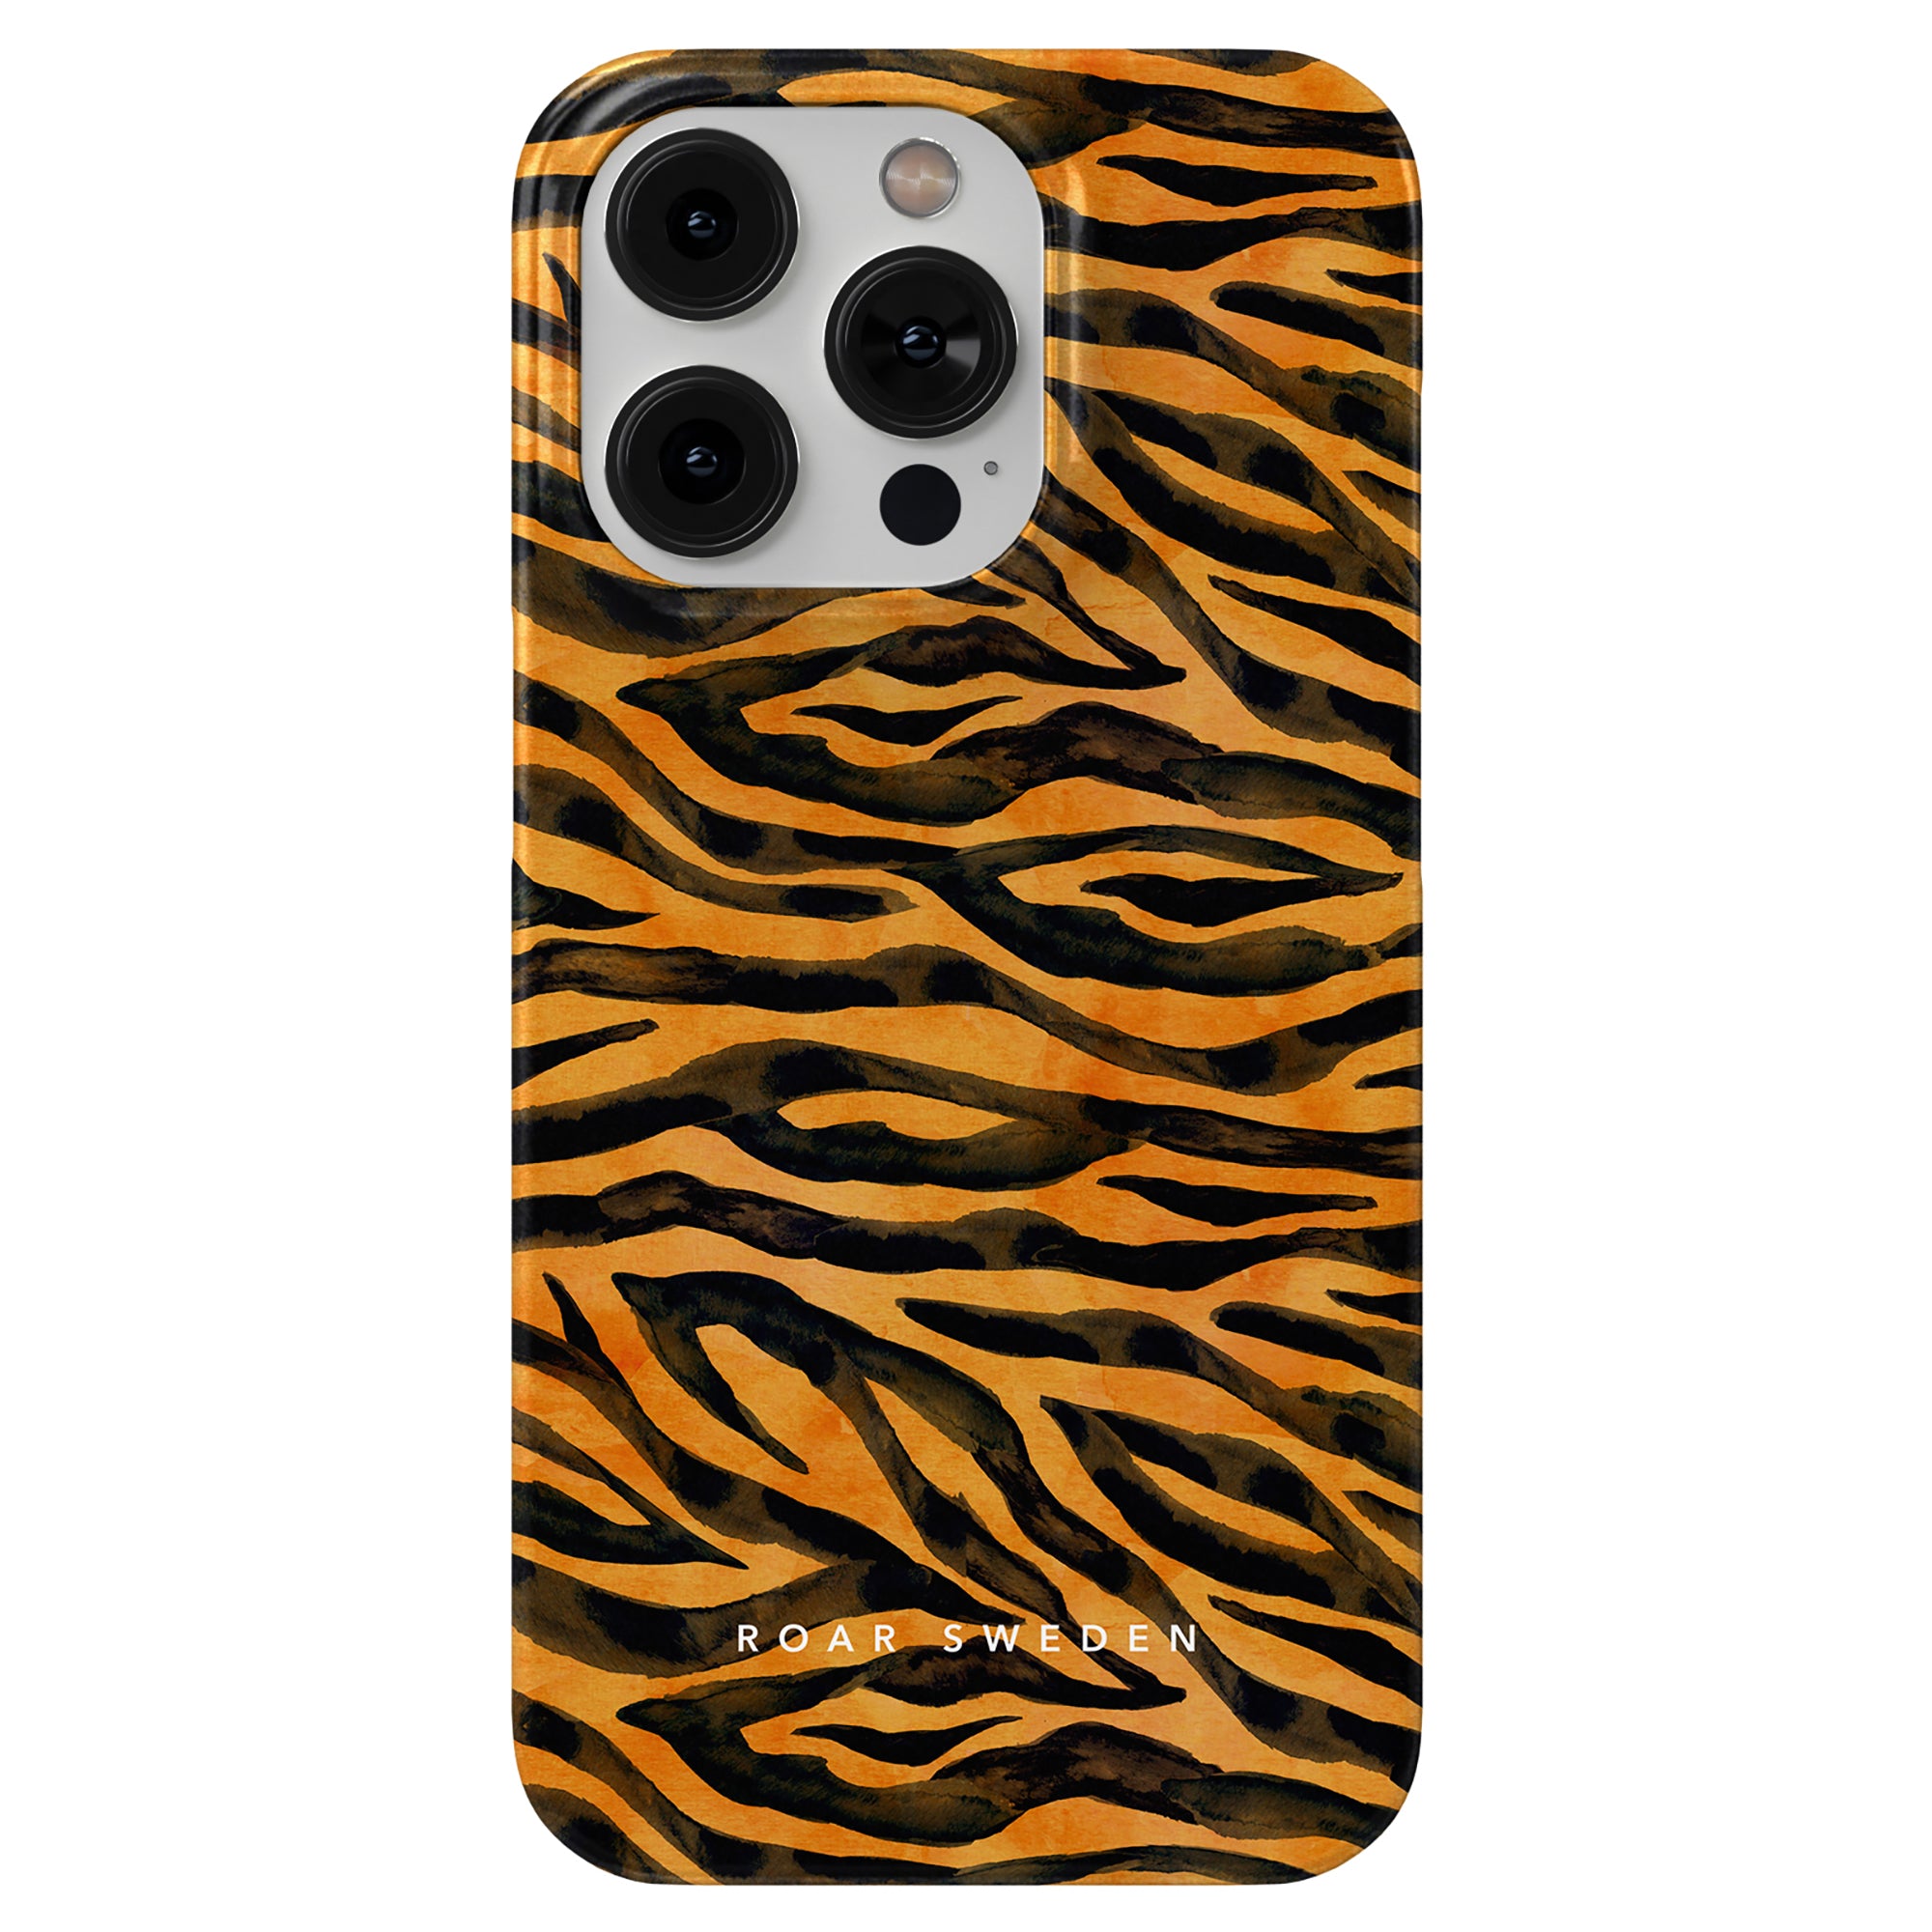 A Roar - Tunt skal med tigertryckdesign för iPhone 11 Pro.